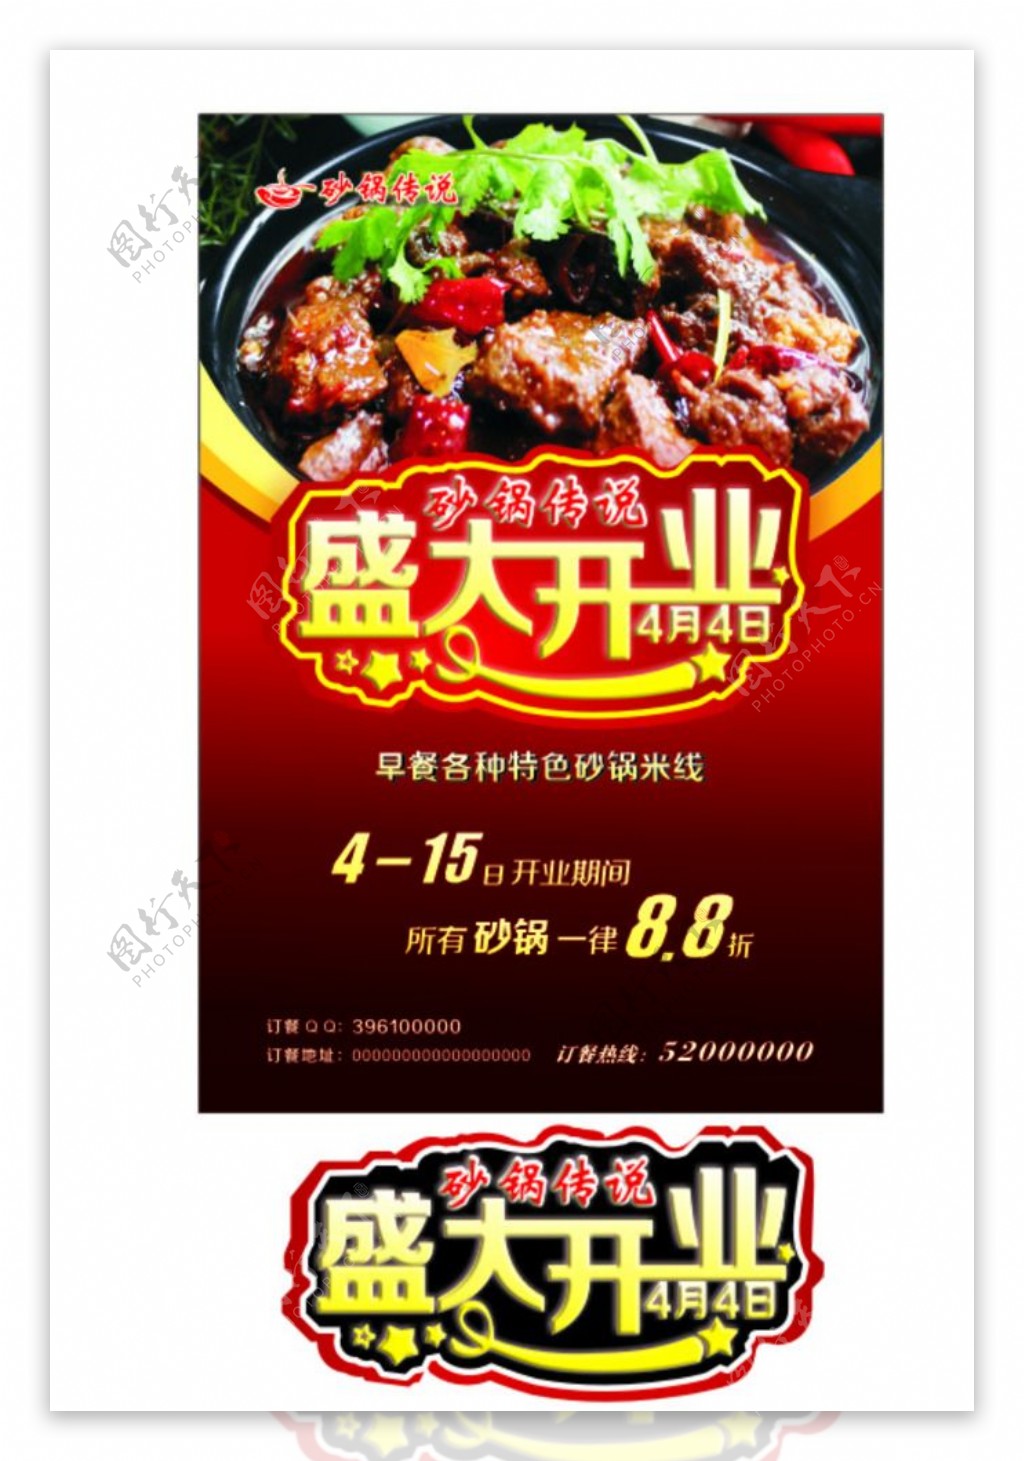 盛大开业砂锅传说红烧牛肉图图片